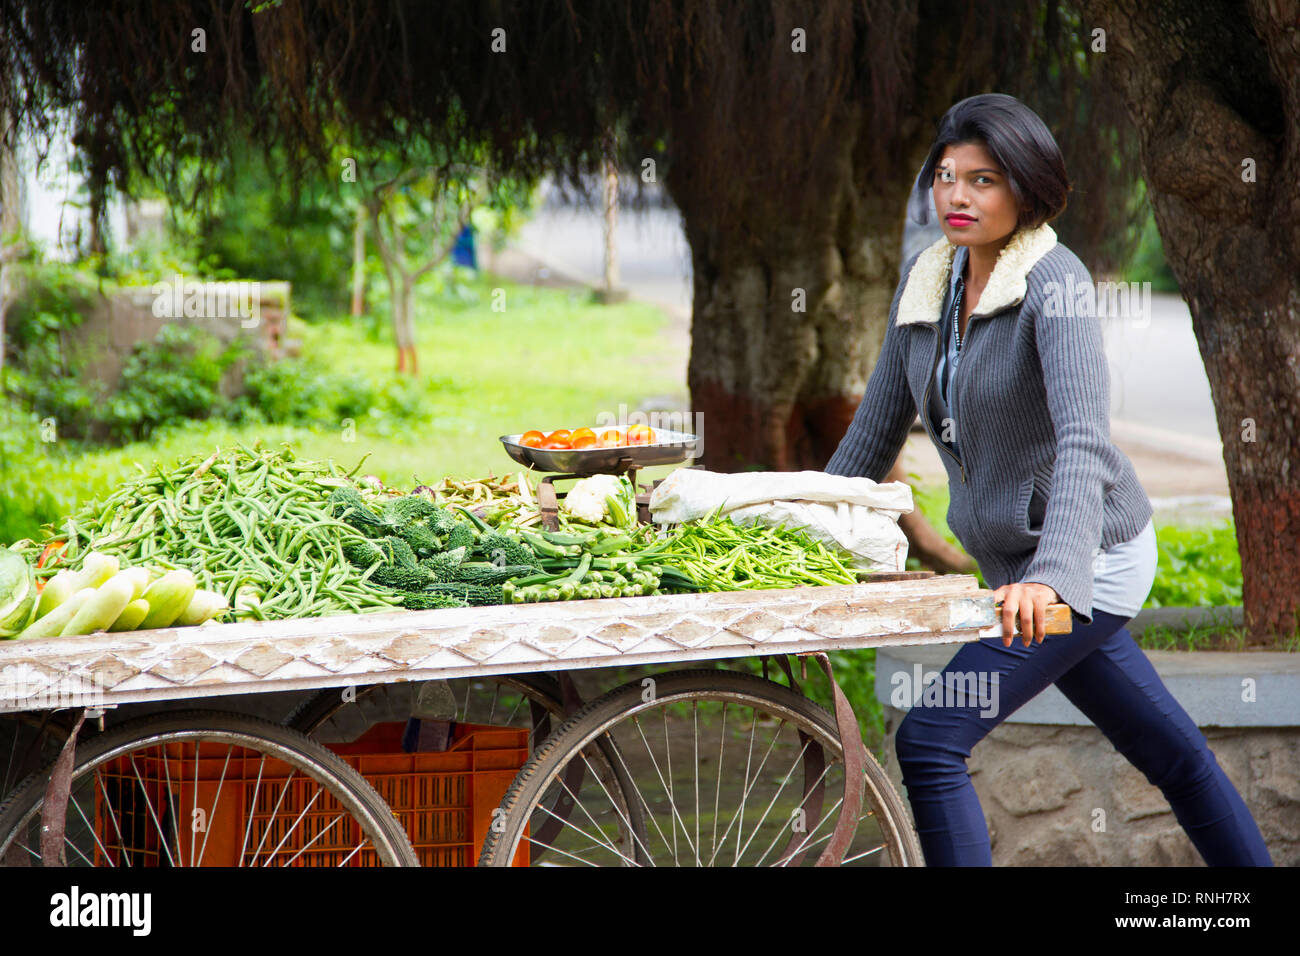 Giovani indiani ragazza con i capelli corti la vendita di verdure su un carrello, Pune Foto Stock